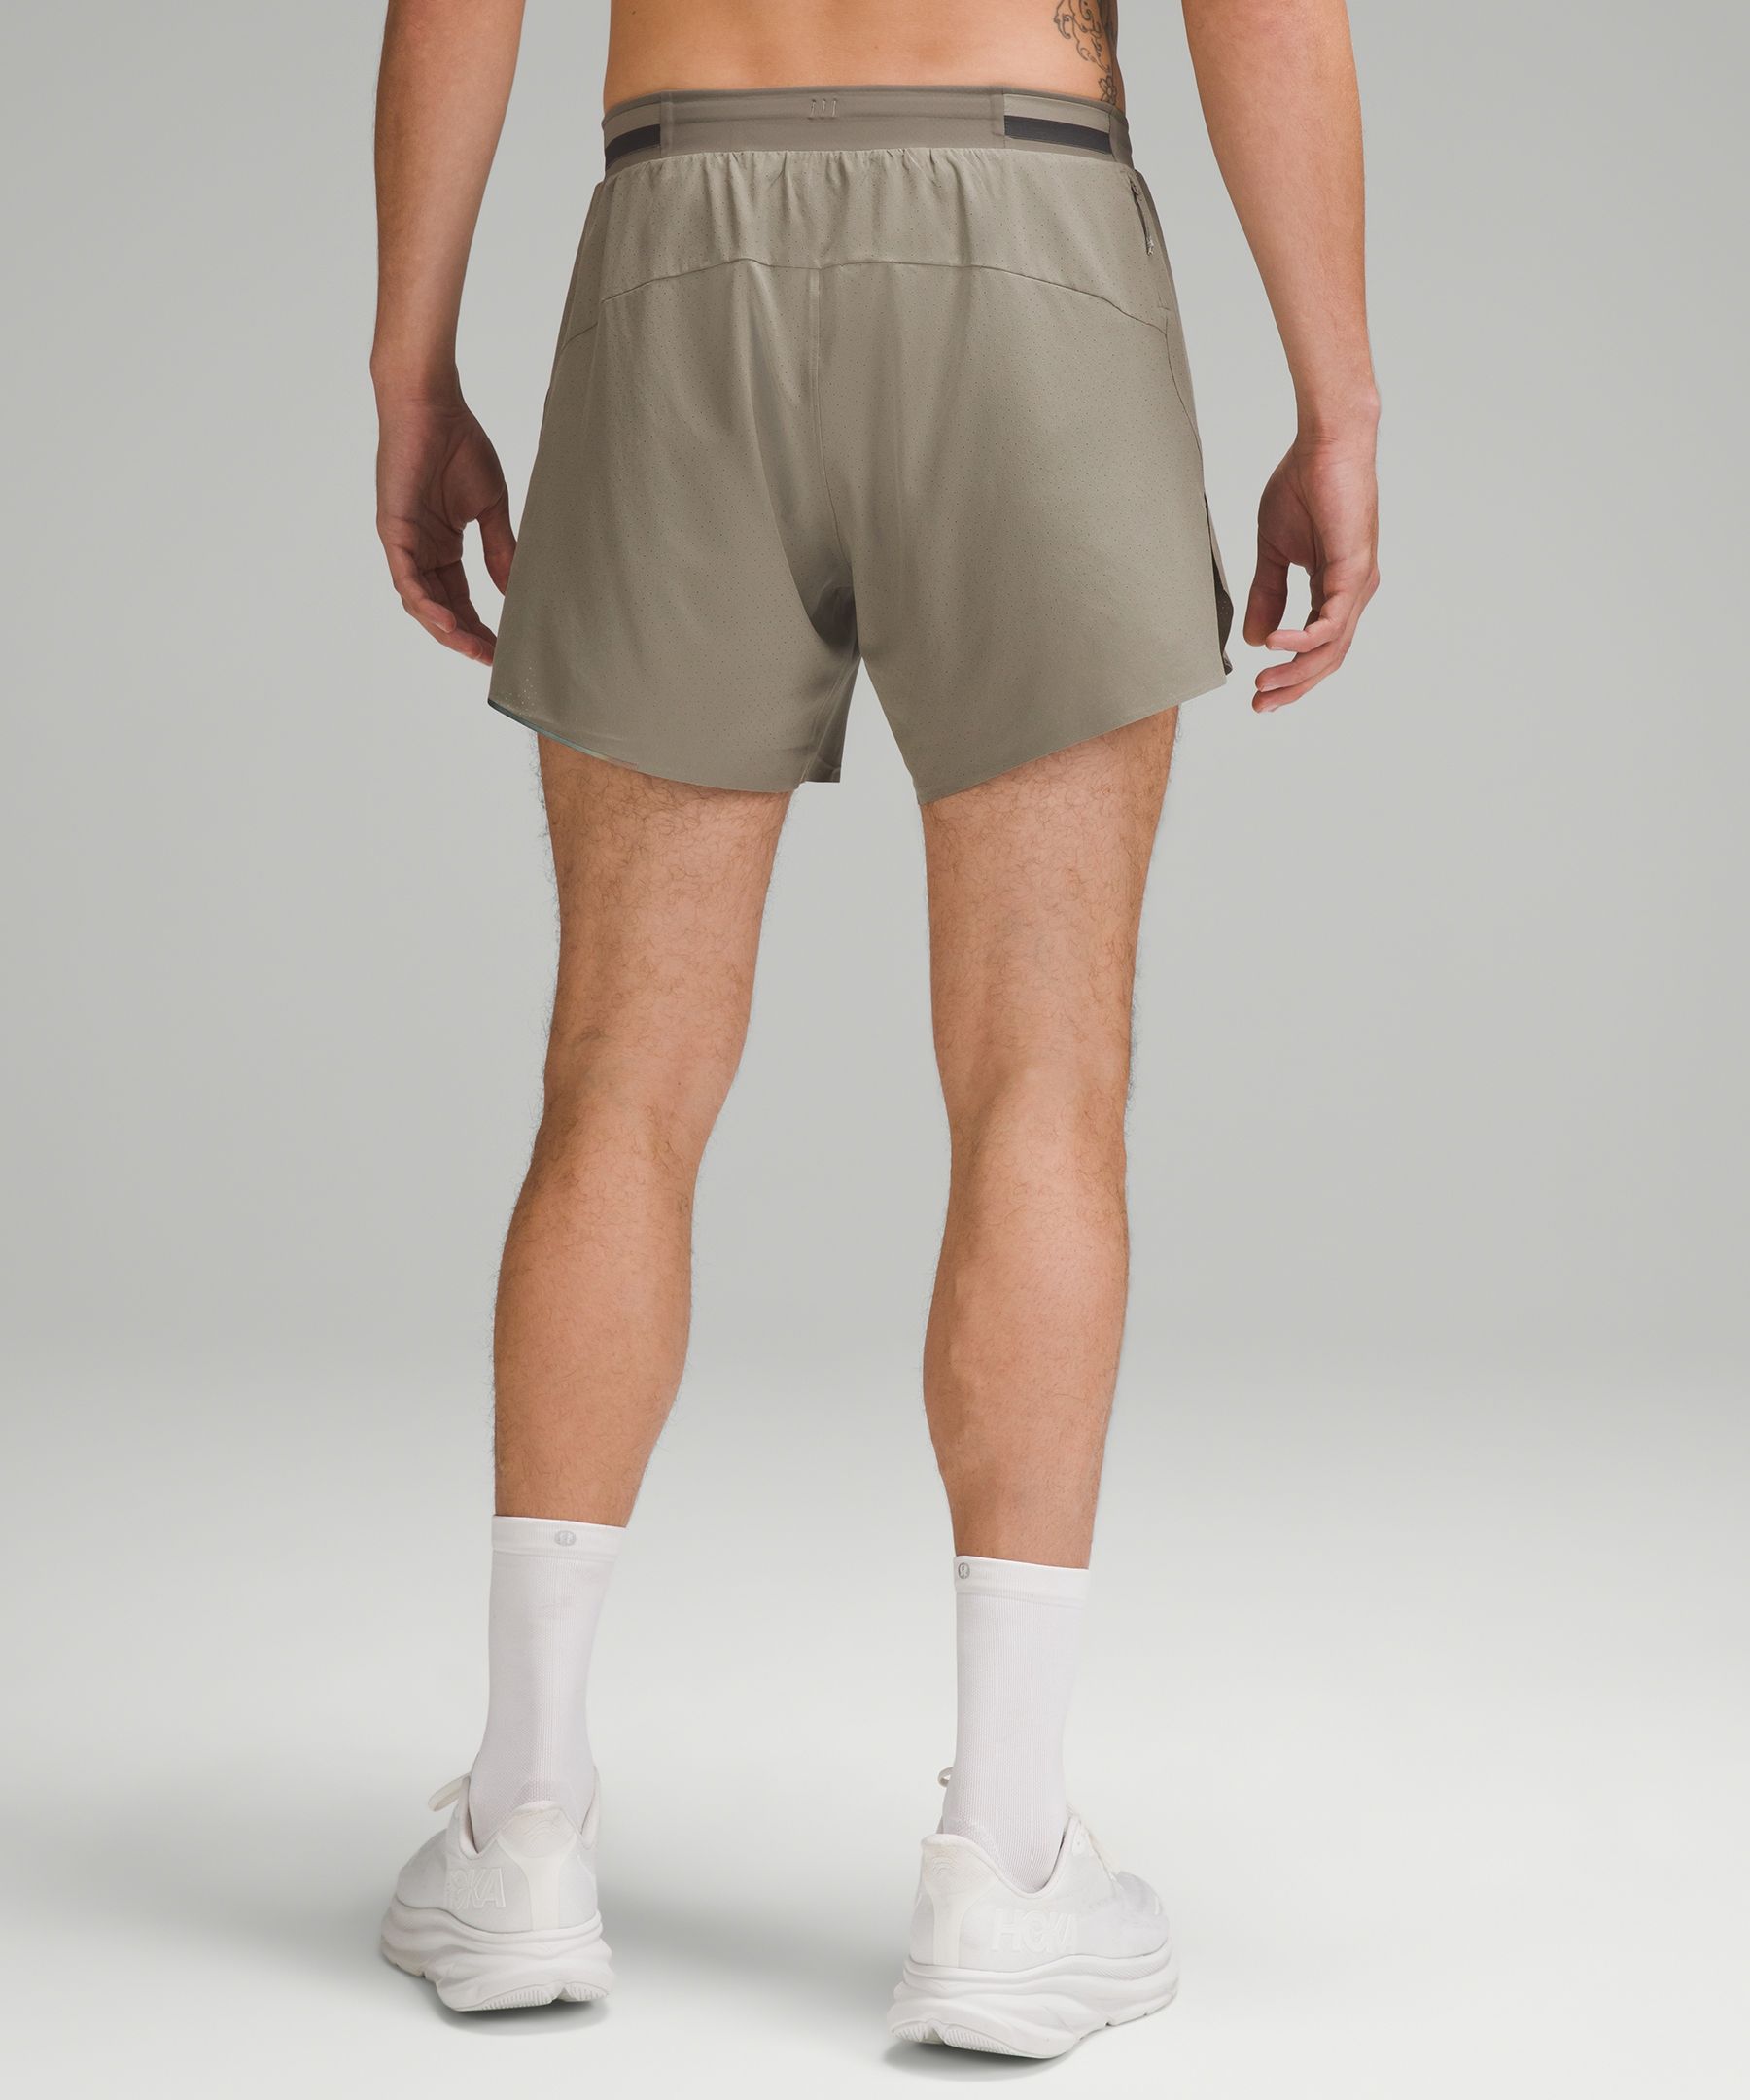 lululemon - Fast and free shorts 8inch on Designer Wardrobe